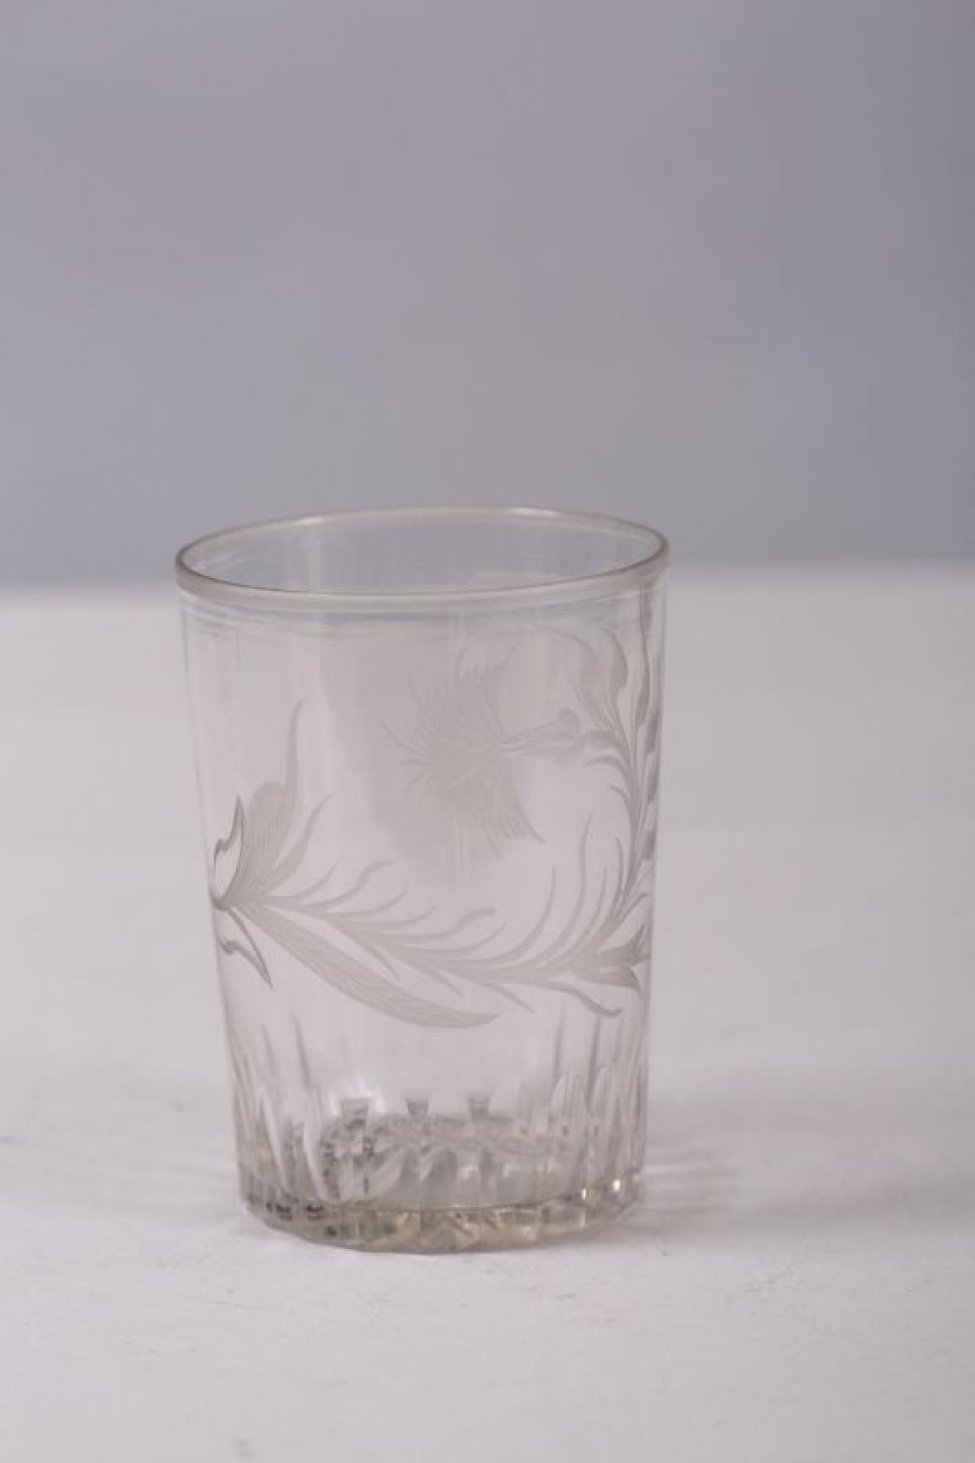 Стакан цилиндрической формы. Нижняя часть тулова  стакана с вертикальными гранями. На тулове с одной стороны изображена резная гвоздика с листочками. По краю борта стакана матовая резная полоска.